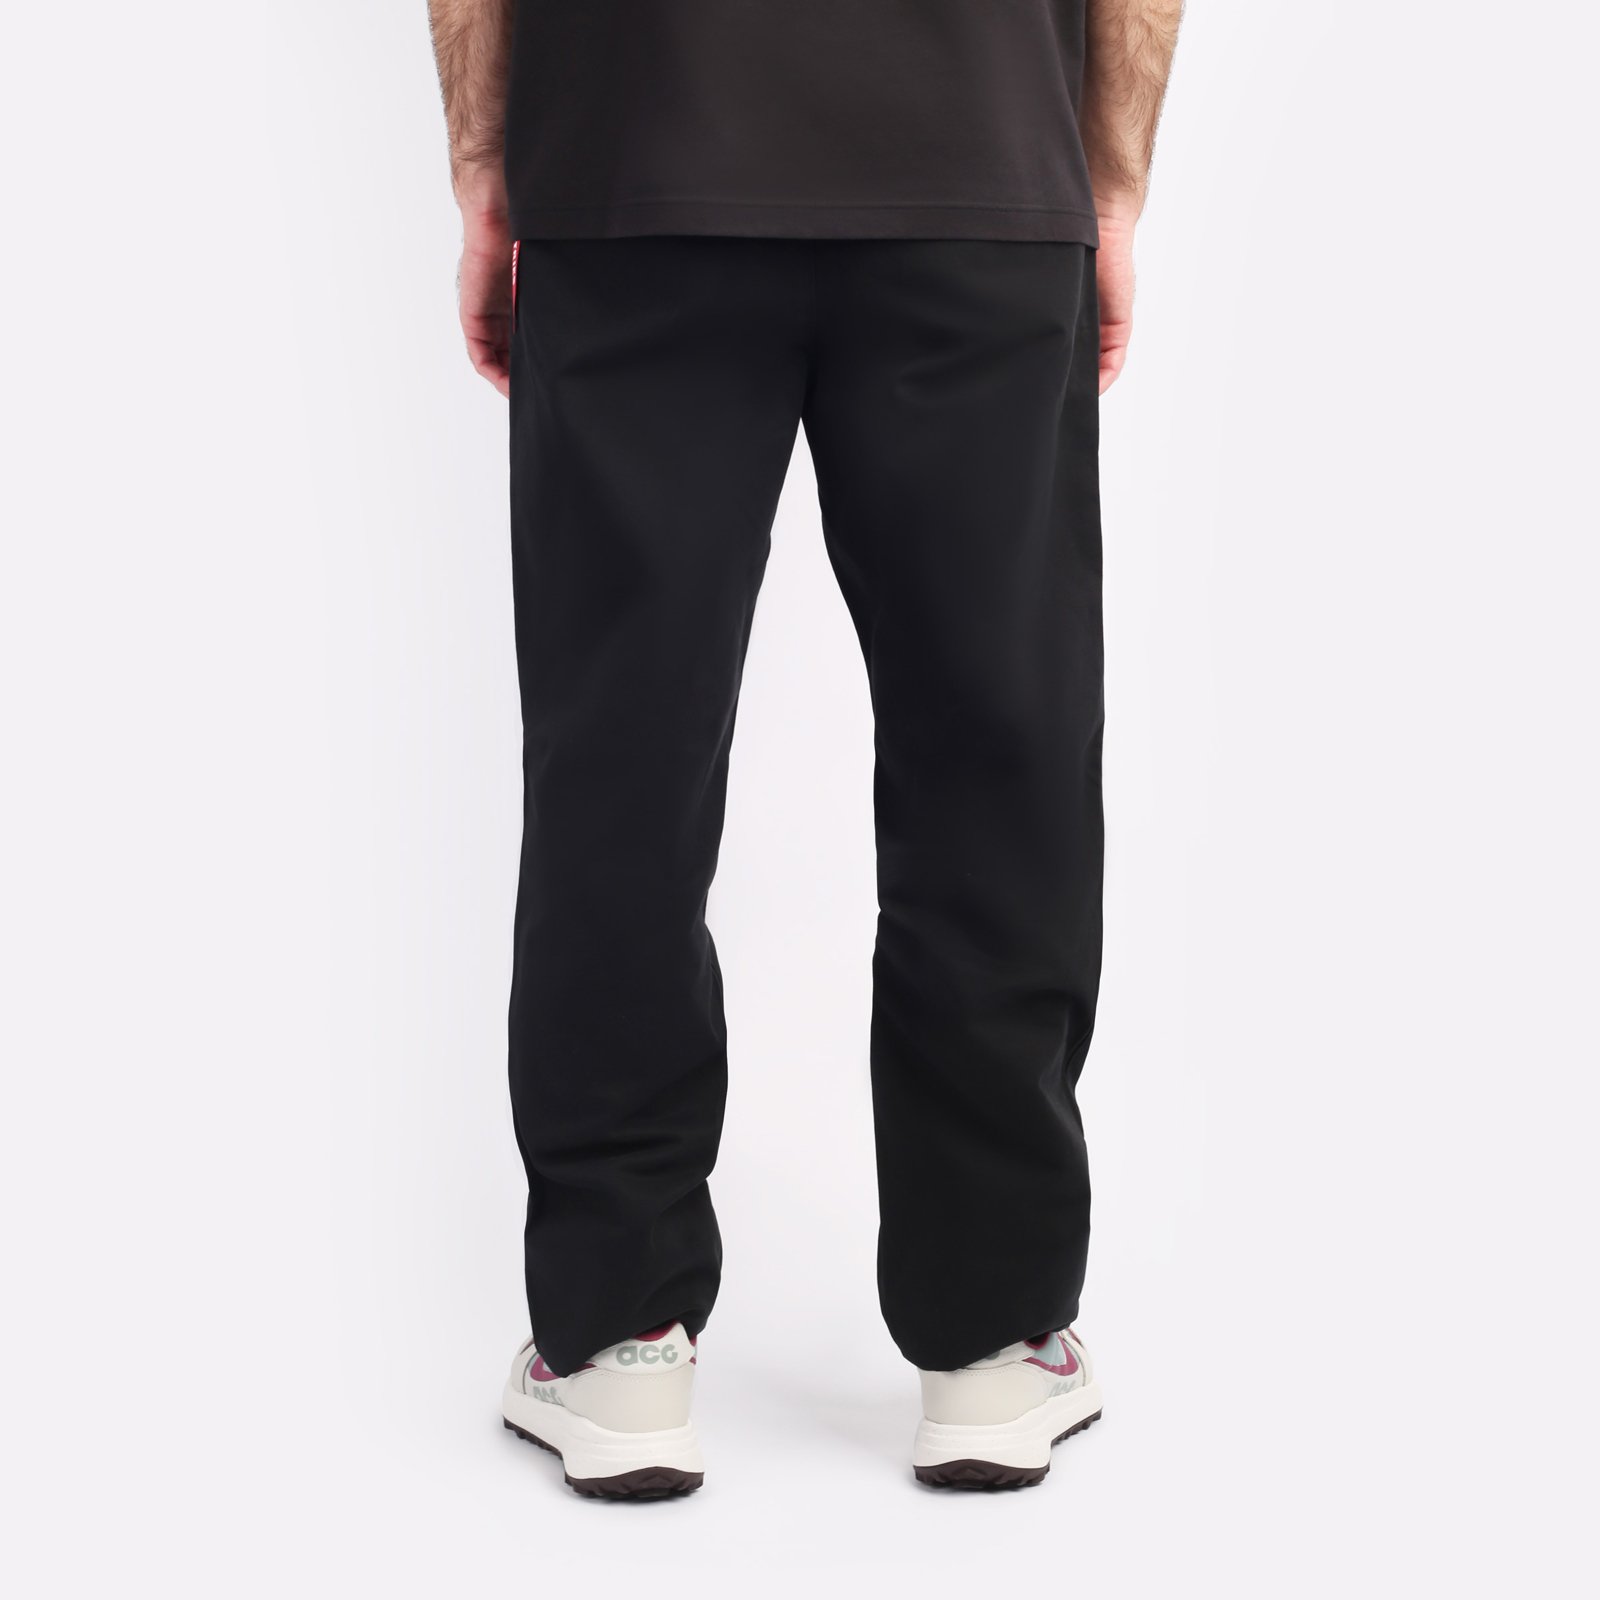 мужские брюки Alpha Industries Classic Trousers  (MBC53500CO-black)  - цена, описание, фото 2